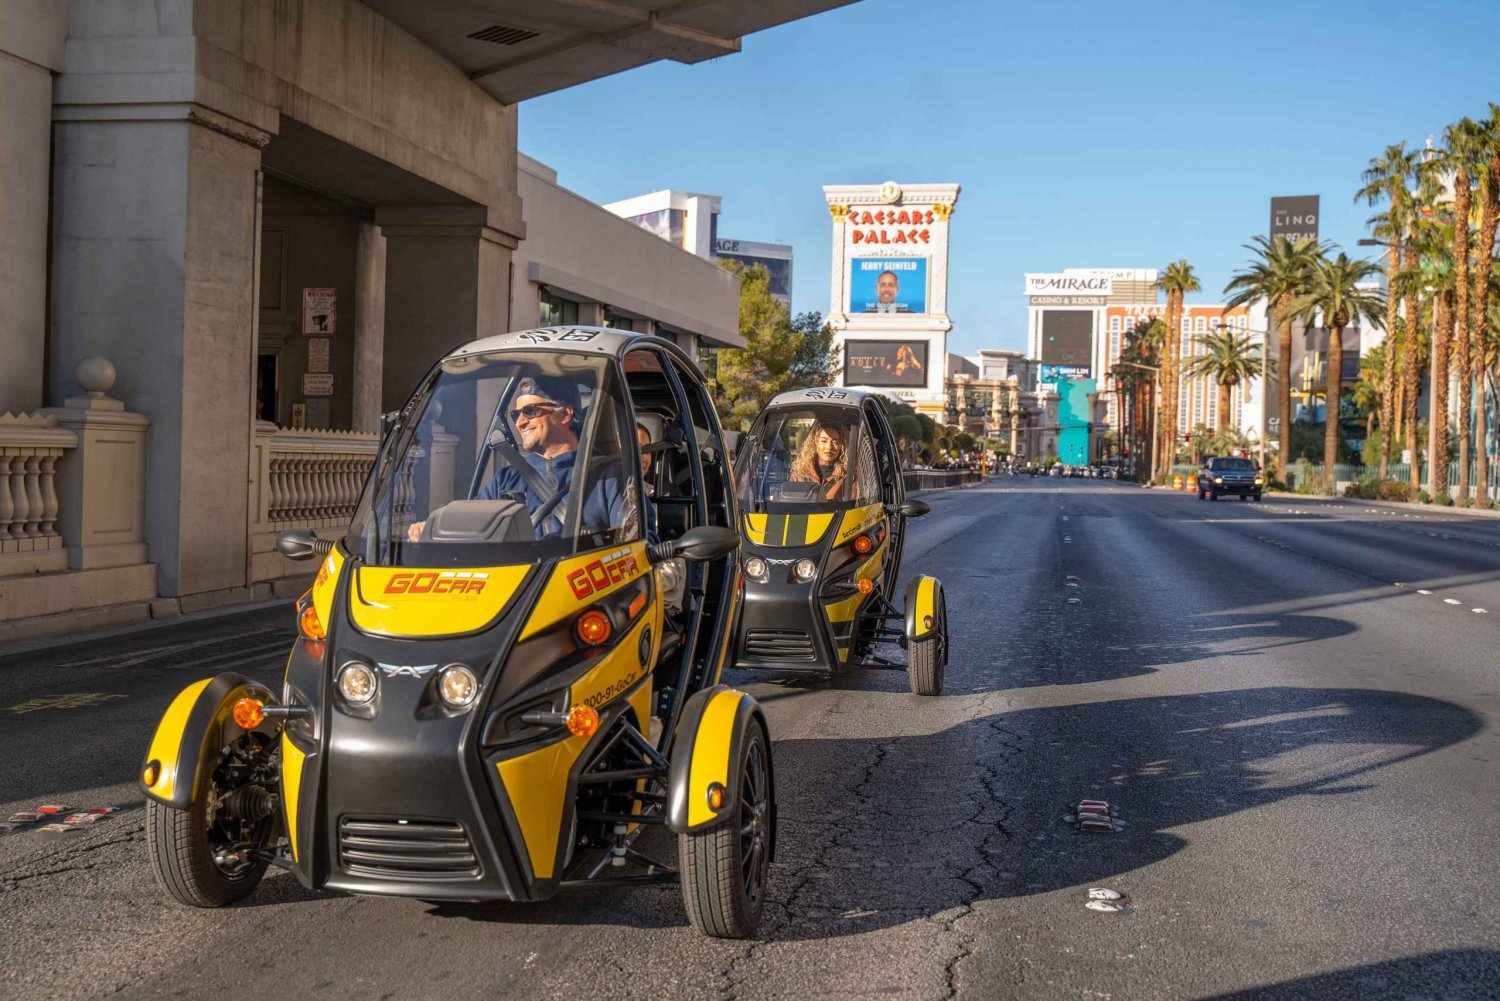 Las Vegas: Tour di un giorno con auto parlanti per esplorare Las Vegas